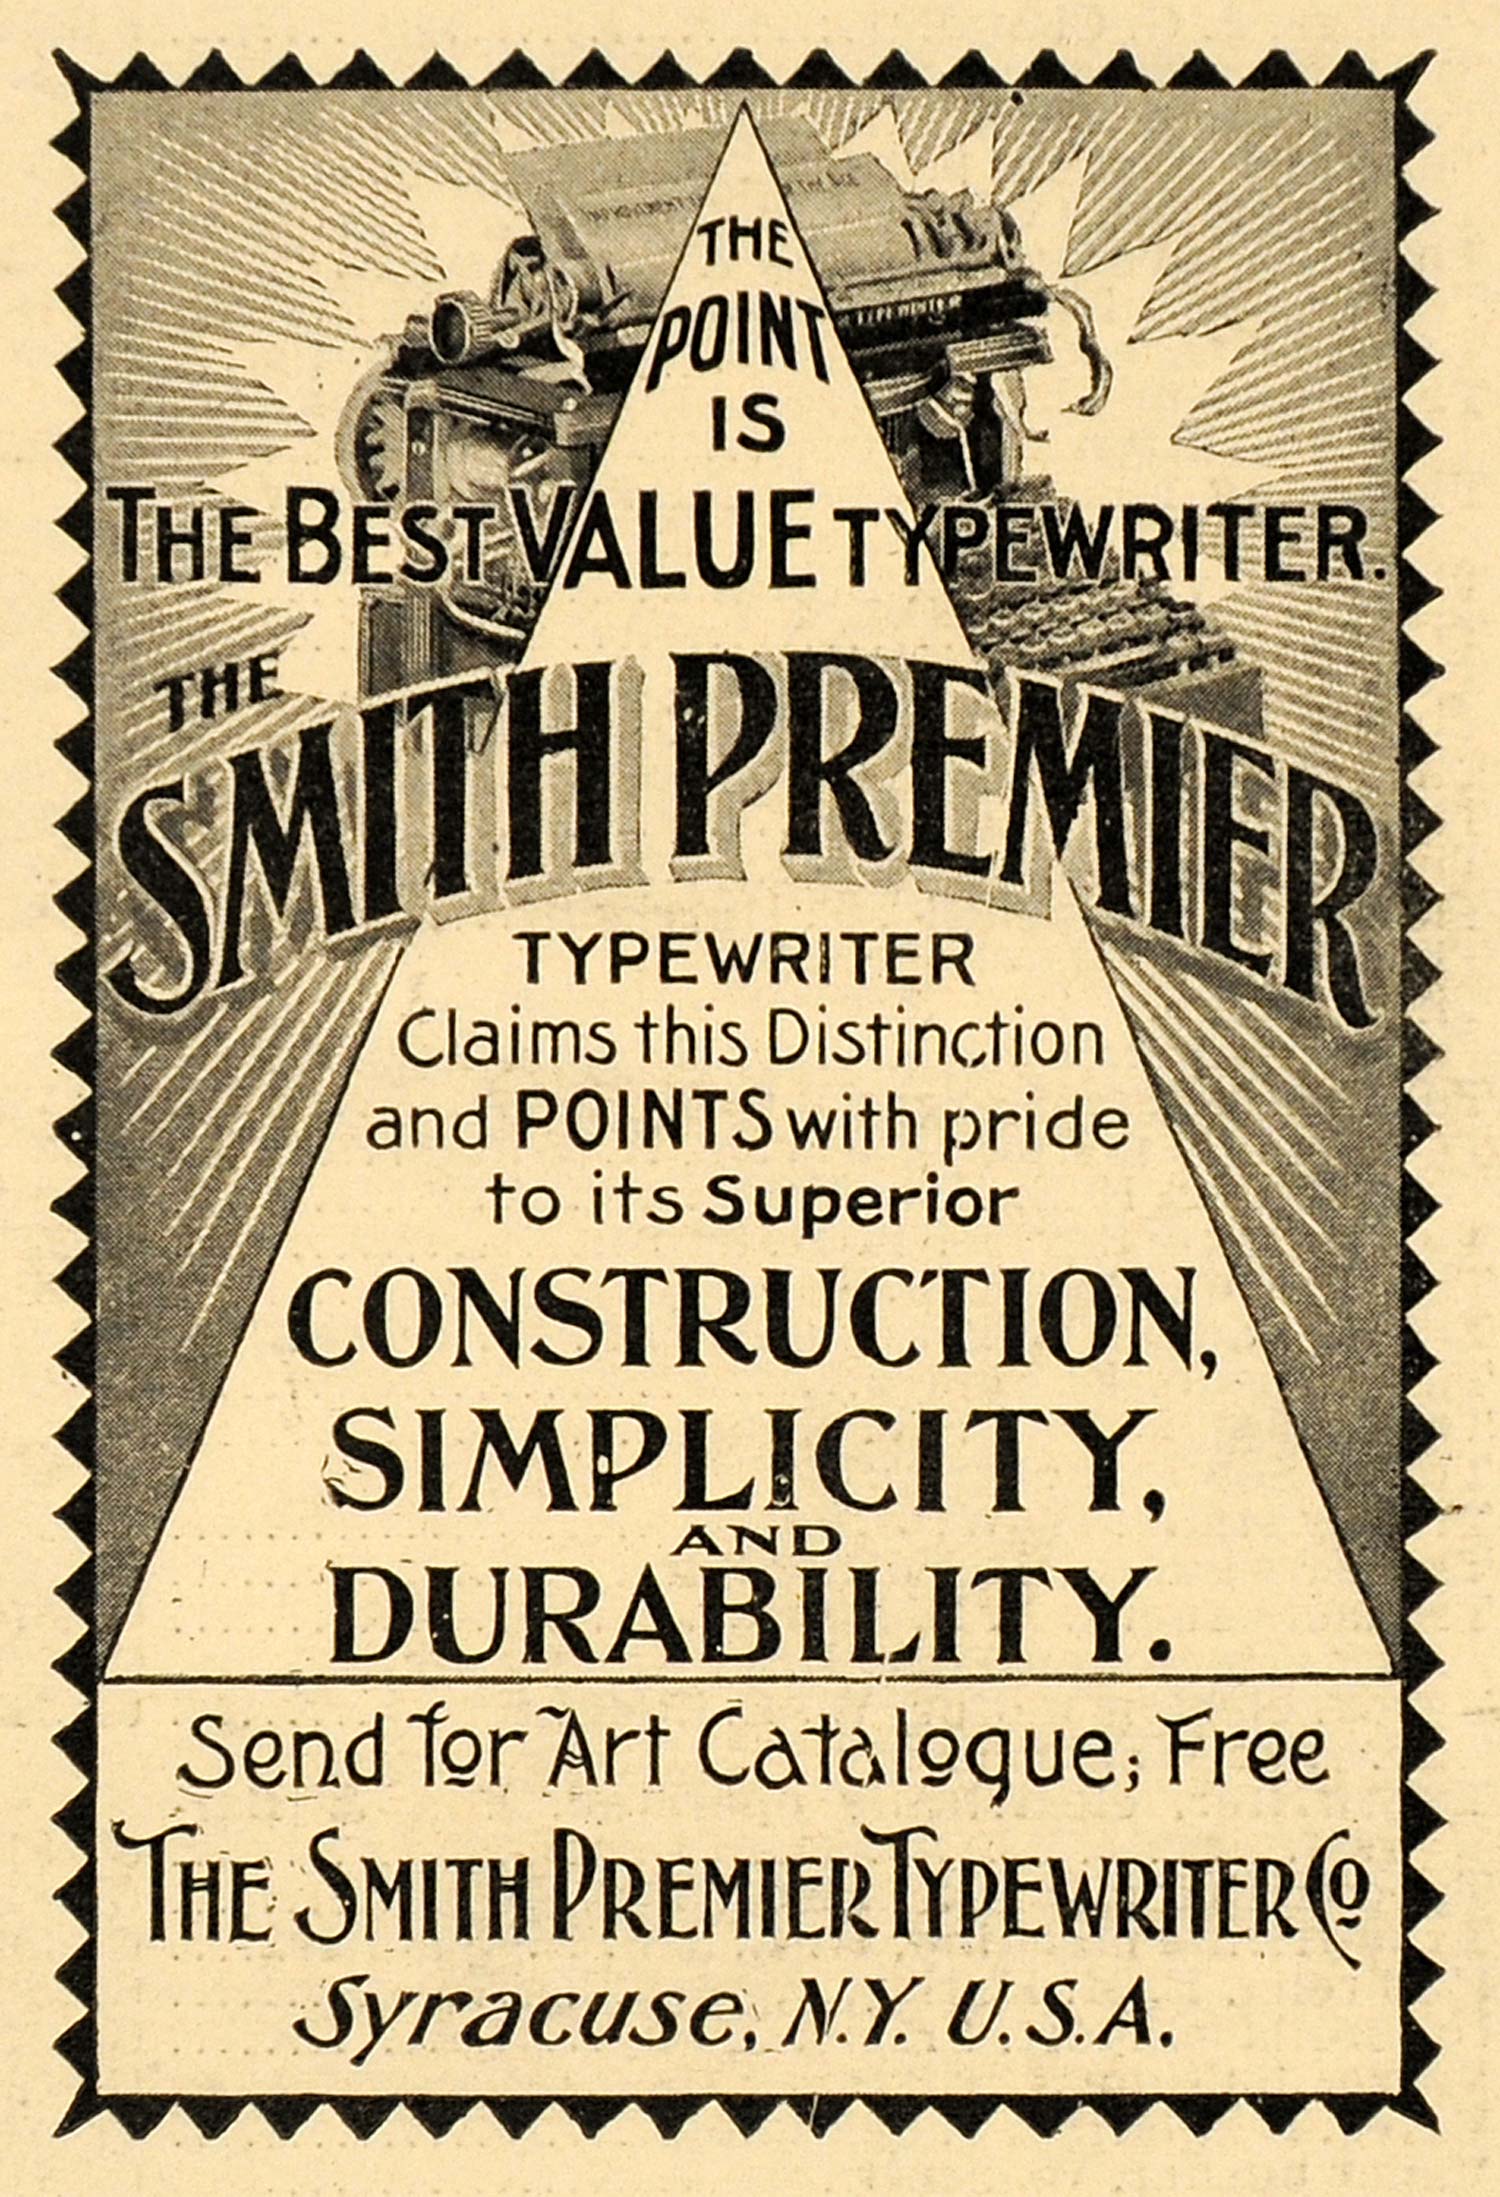 1899 Ad Antique Smith Premier Typewriter Writing Machine Business Supplies SCA2